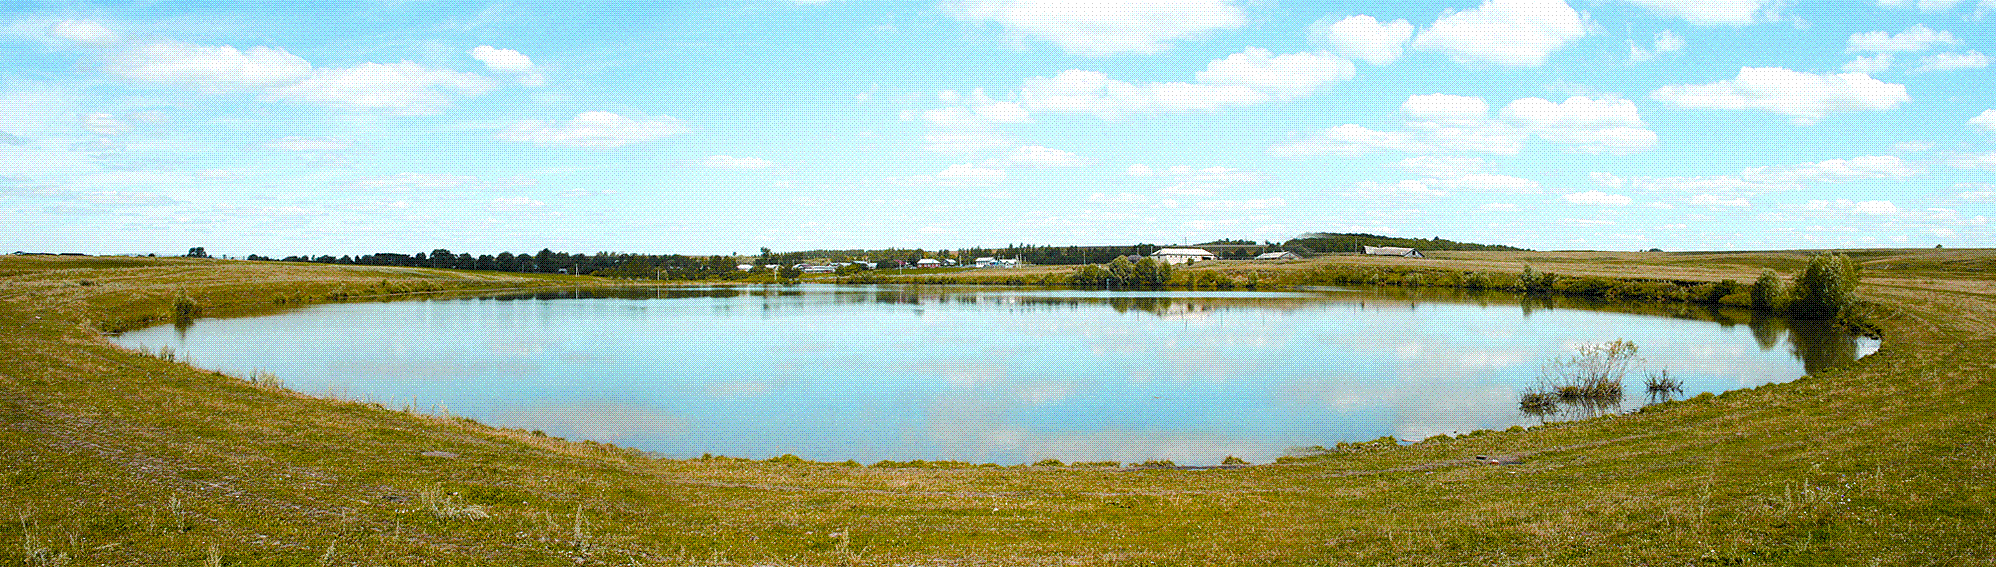 "Озеро Тени. Аликовский район. Фото 2008."